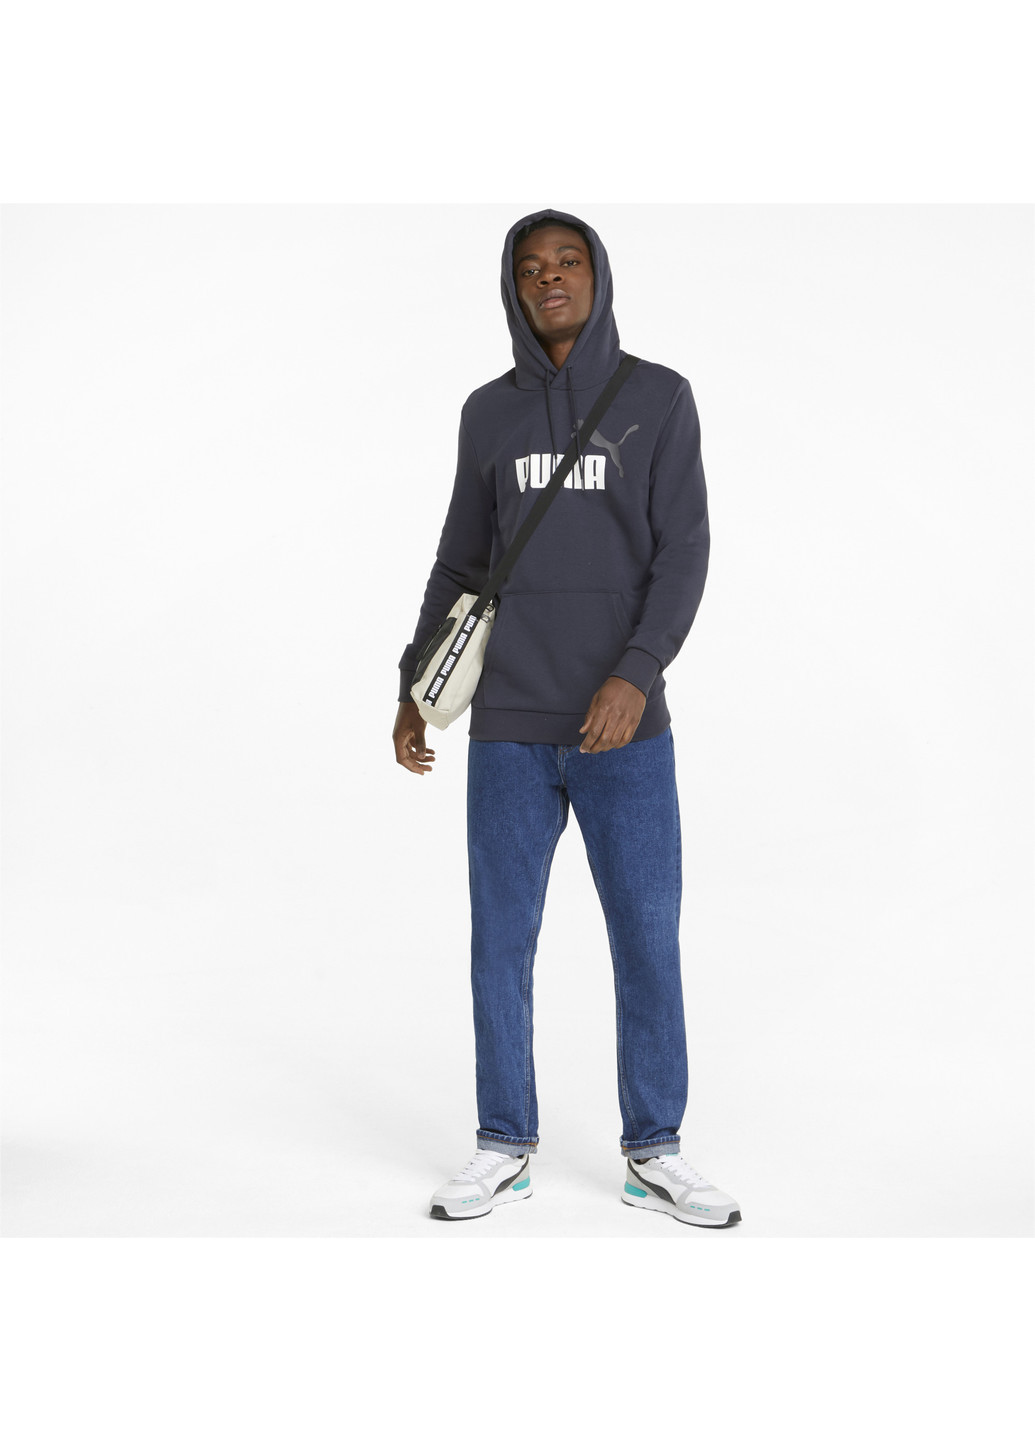 Синя демісезонна толстовка essentials+ two-tone big logo men's hoodie Puma